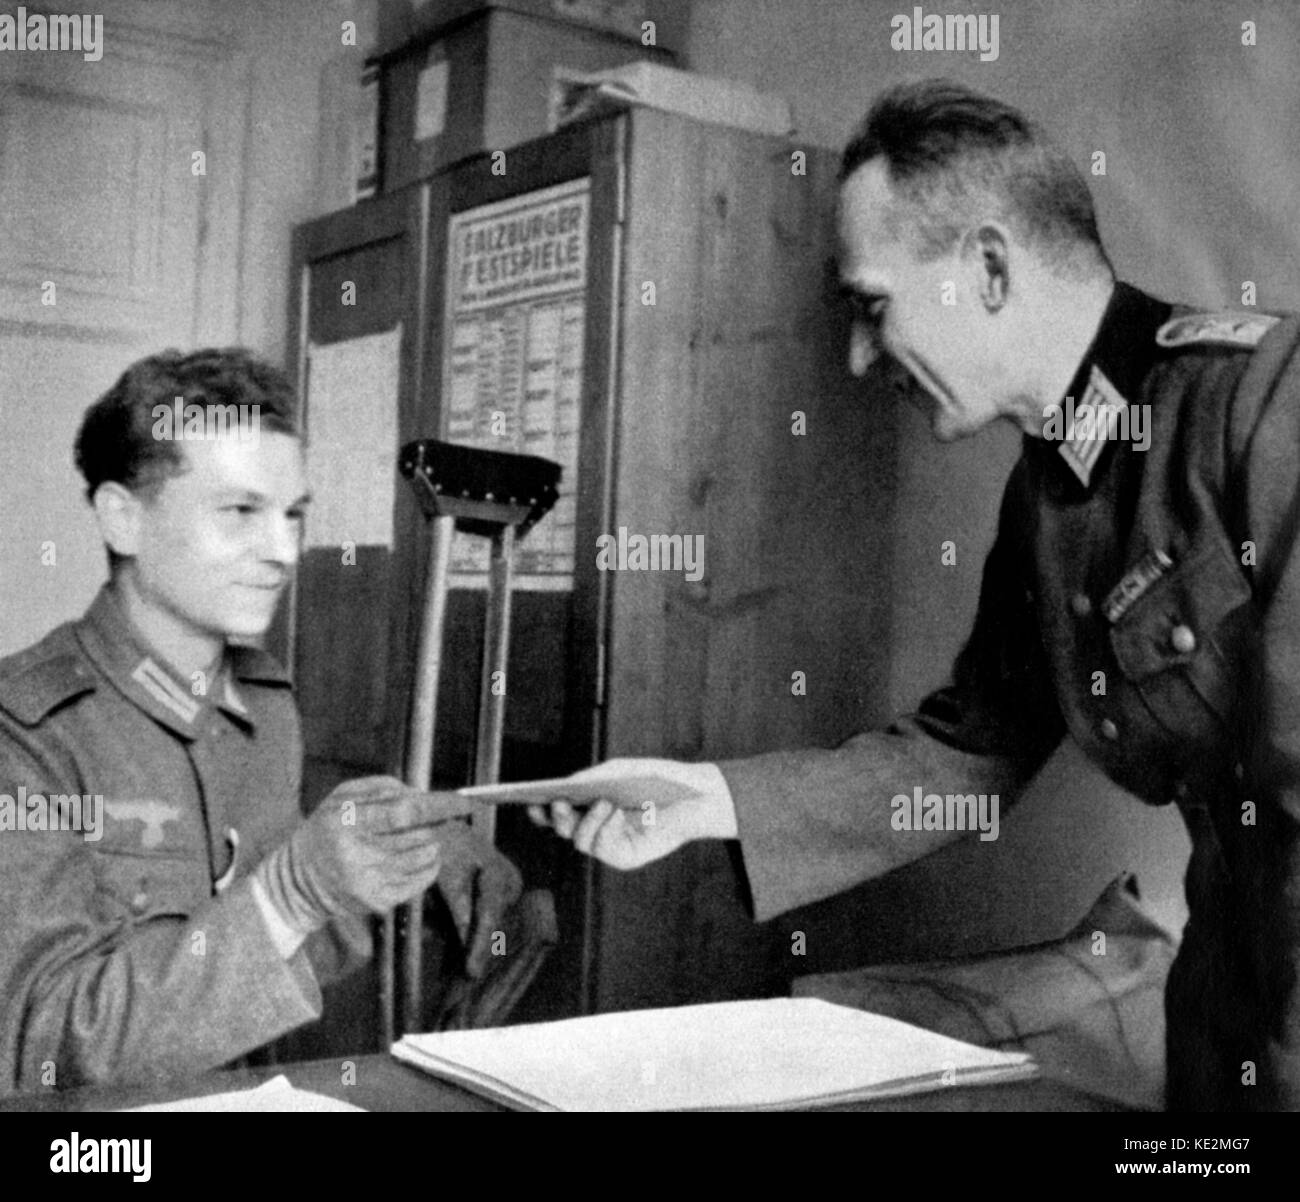 Salzburger Festspiele, 1941: Ein verwundeter Deutscher Soldat verkaufen, eine Eintrittskarte zu einem Konzert mit einem anderen Soldaten. Poster die Salzburg Festspiele" im Hintergrund. Stockfoto